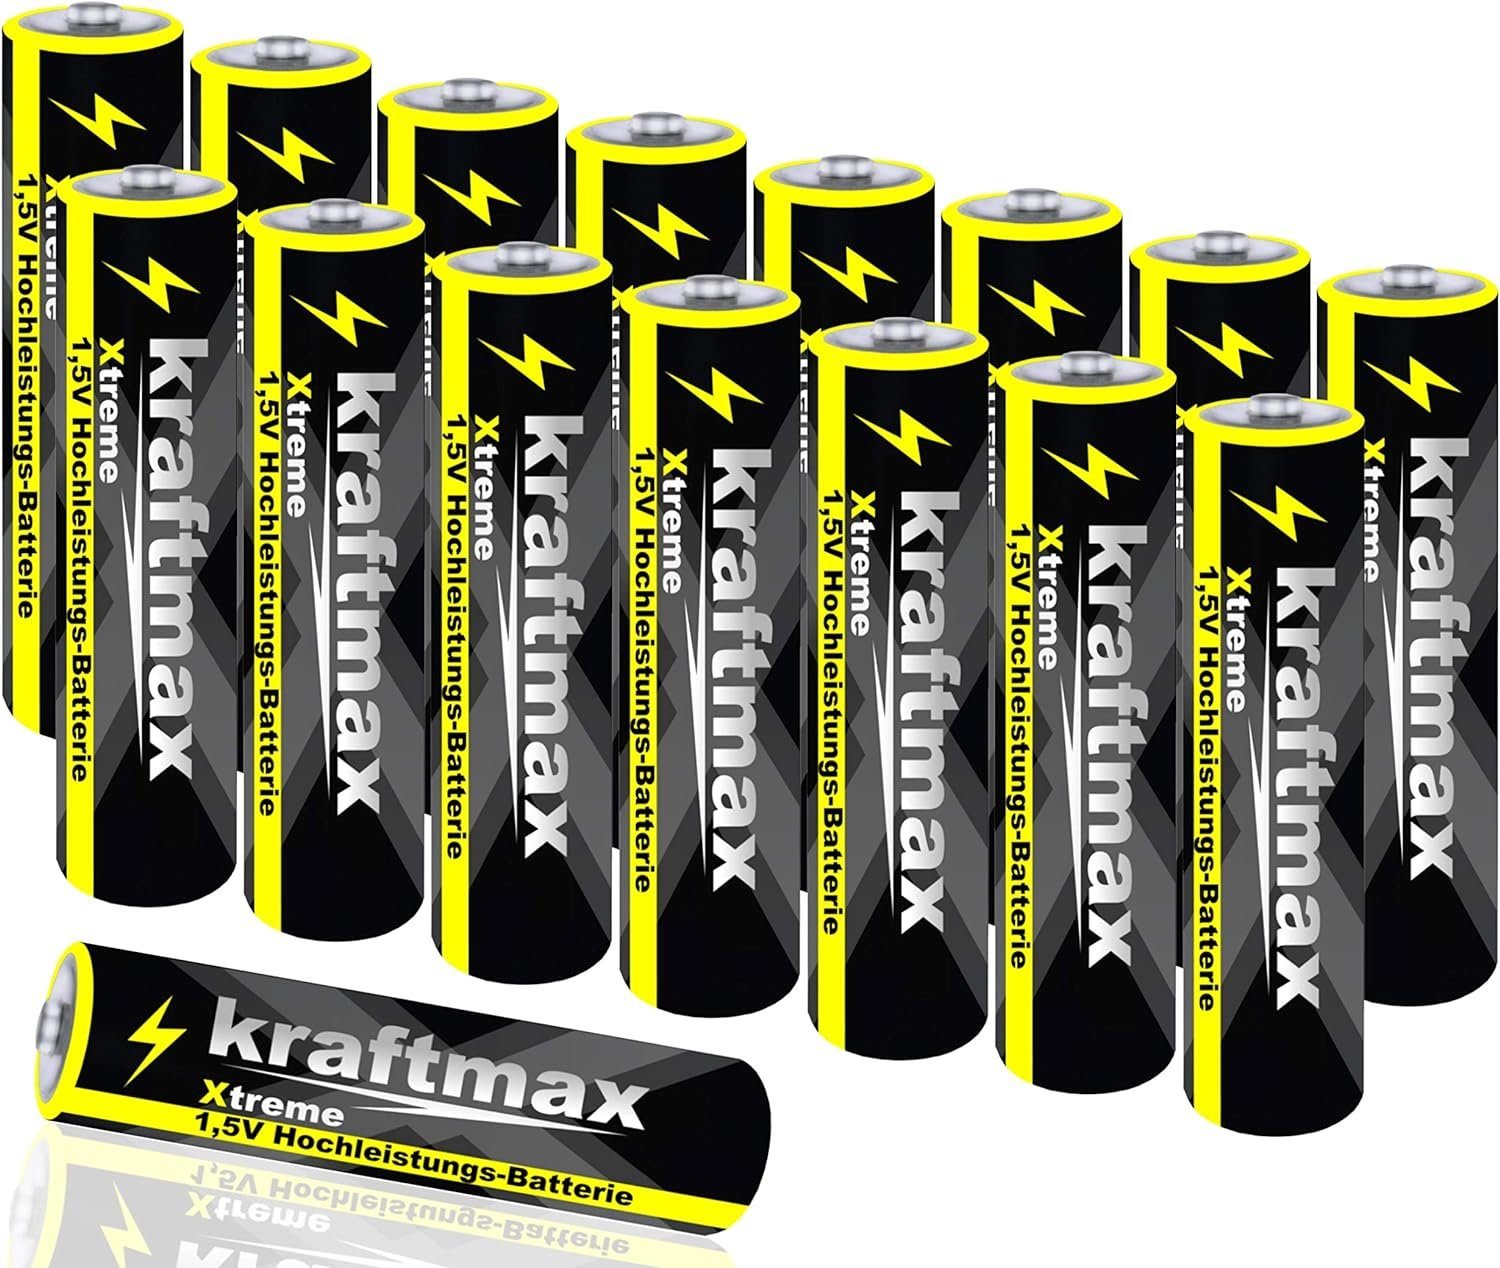 Pack (1 Batterie 1,5V Xtreme - Alkaline Longlife Batterie, AAA Micro St) 16er kraftmax